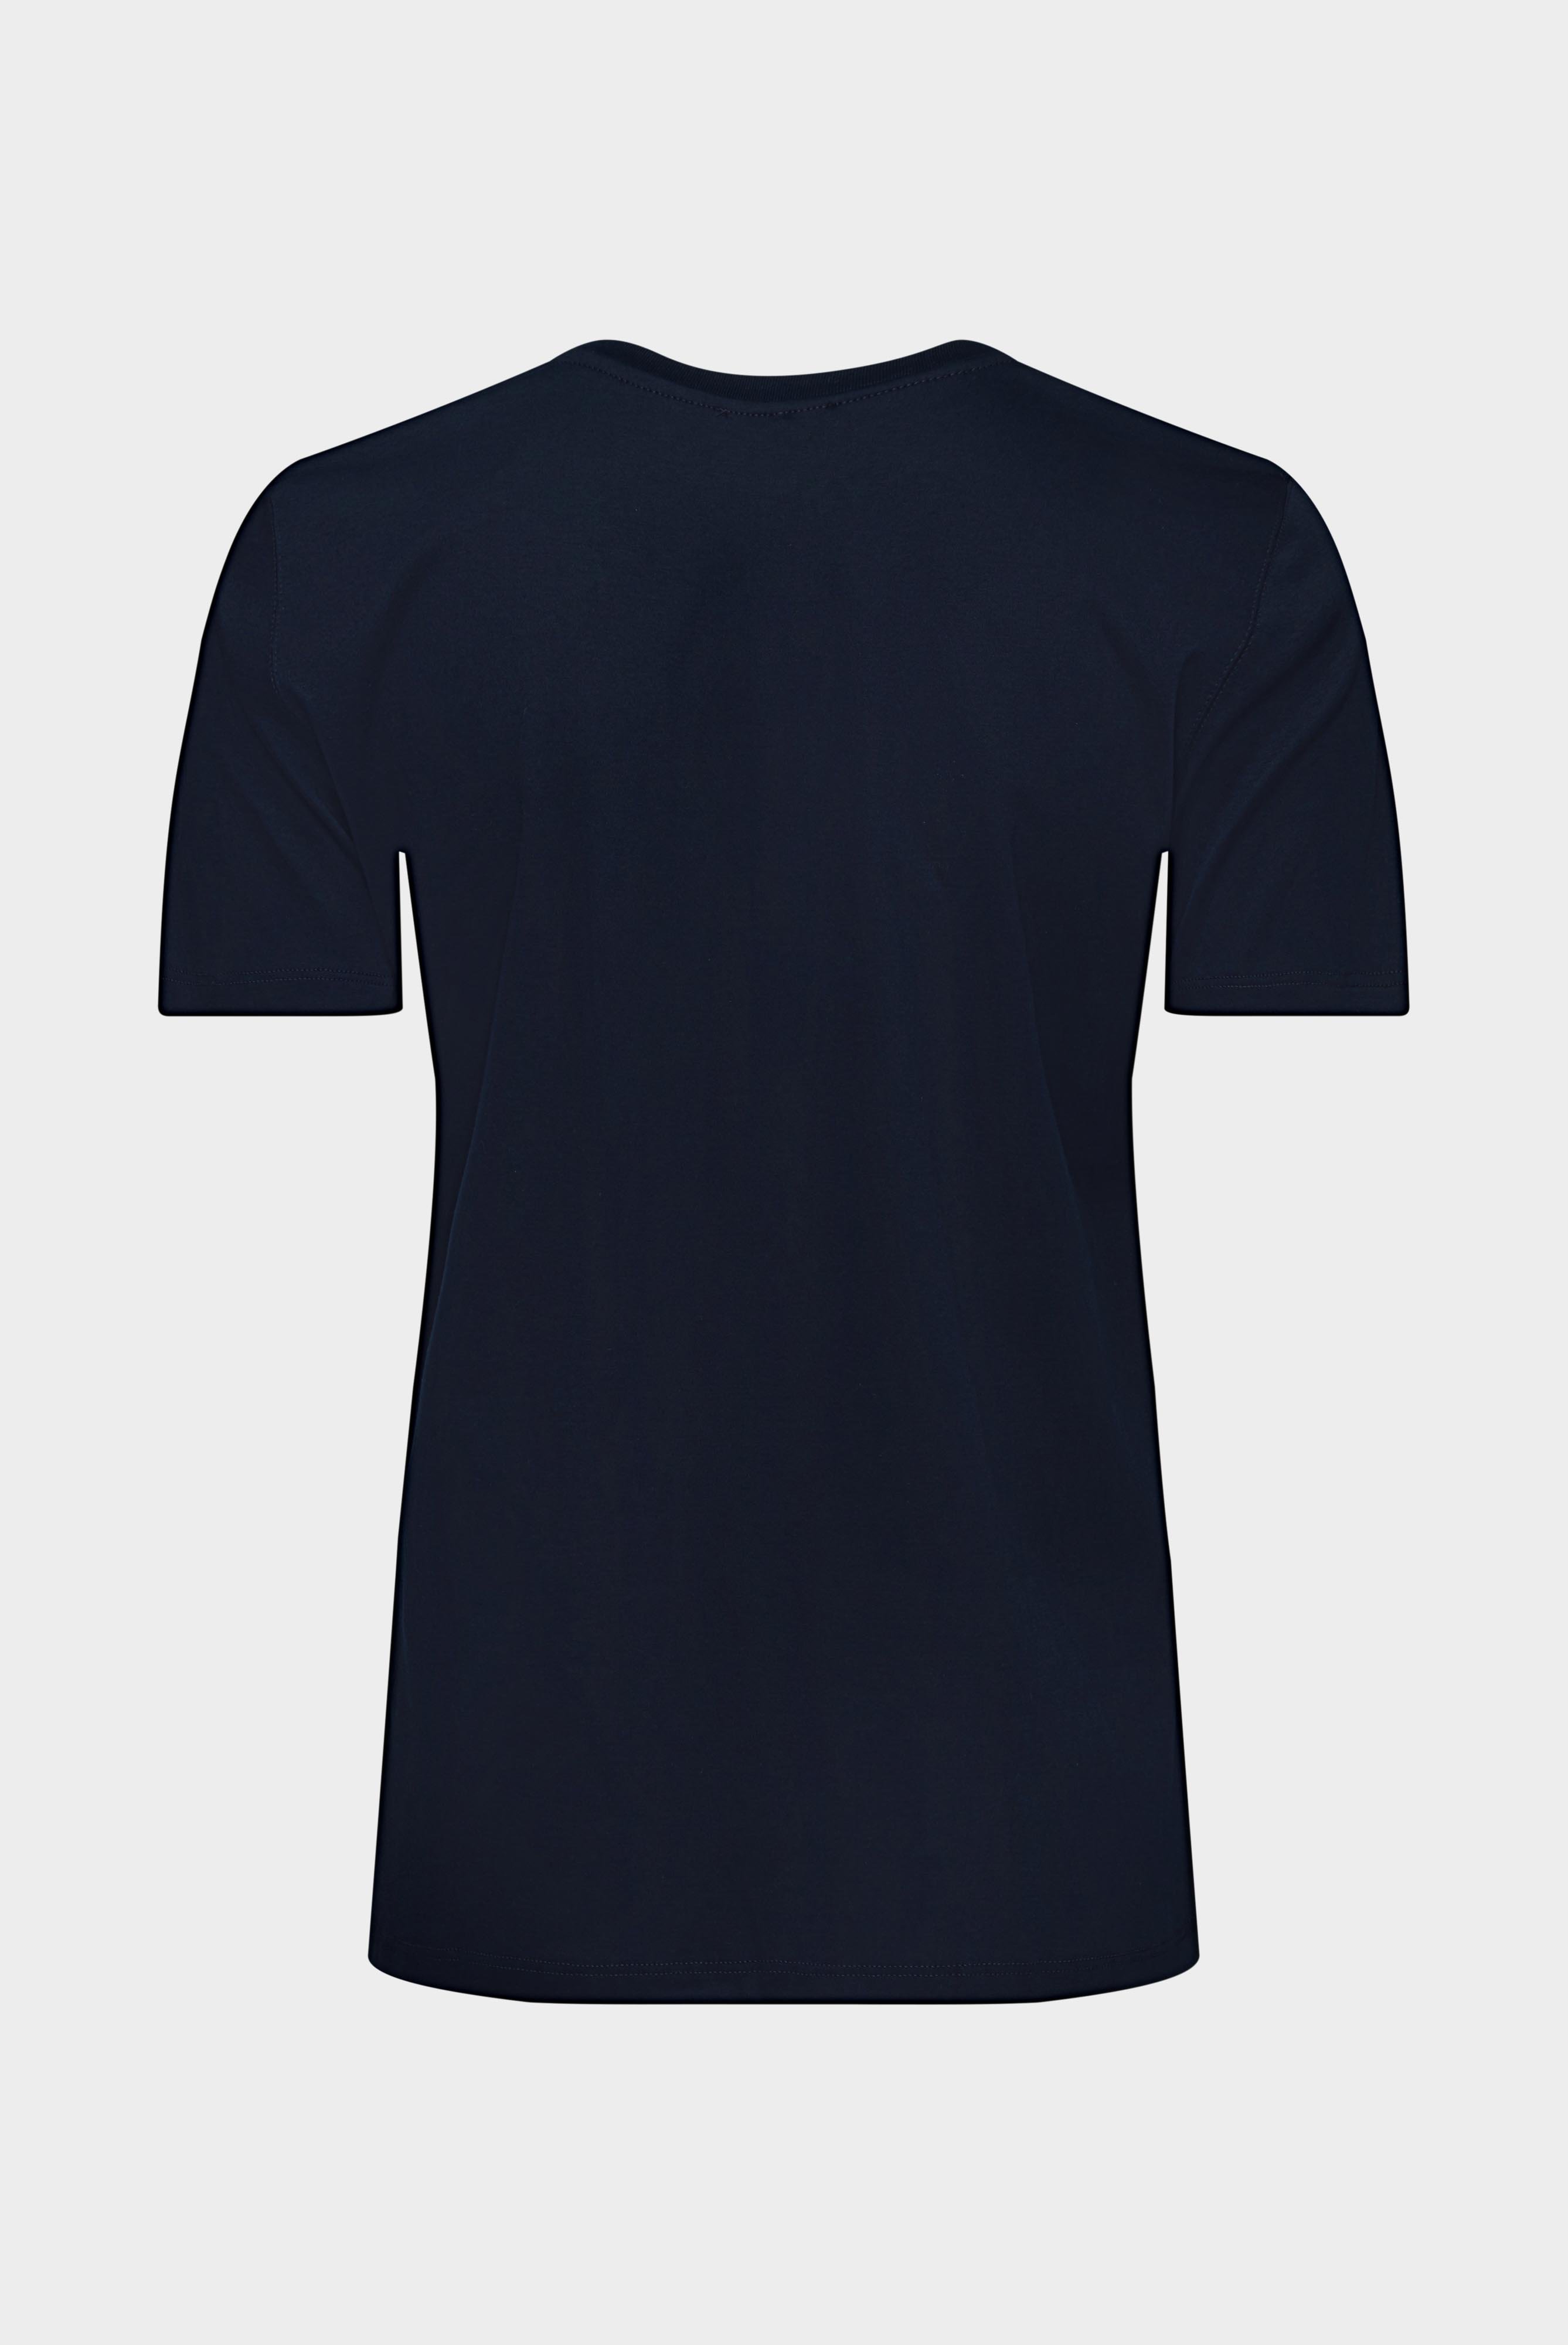 Tops & T-Shirts+Jersey T-Shirt+05.6384.18.180031.790.40